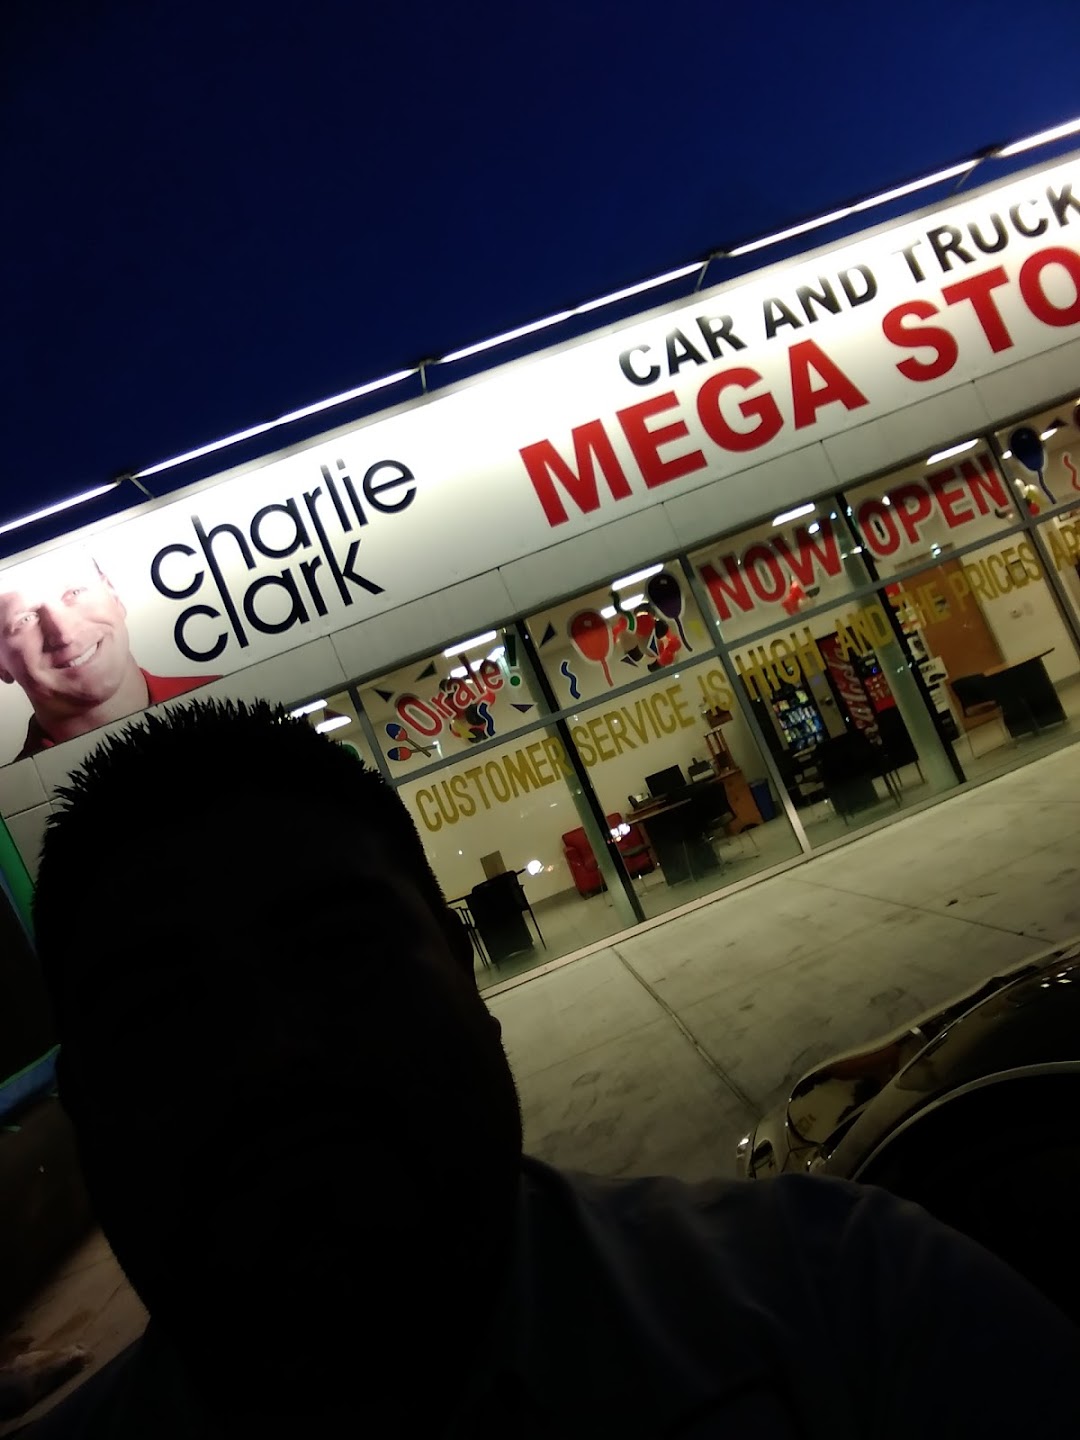 Charlie Clark Mega Store